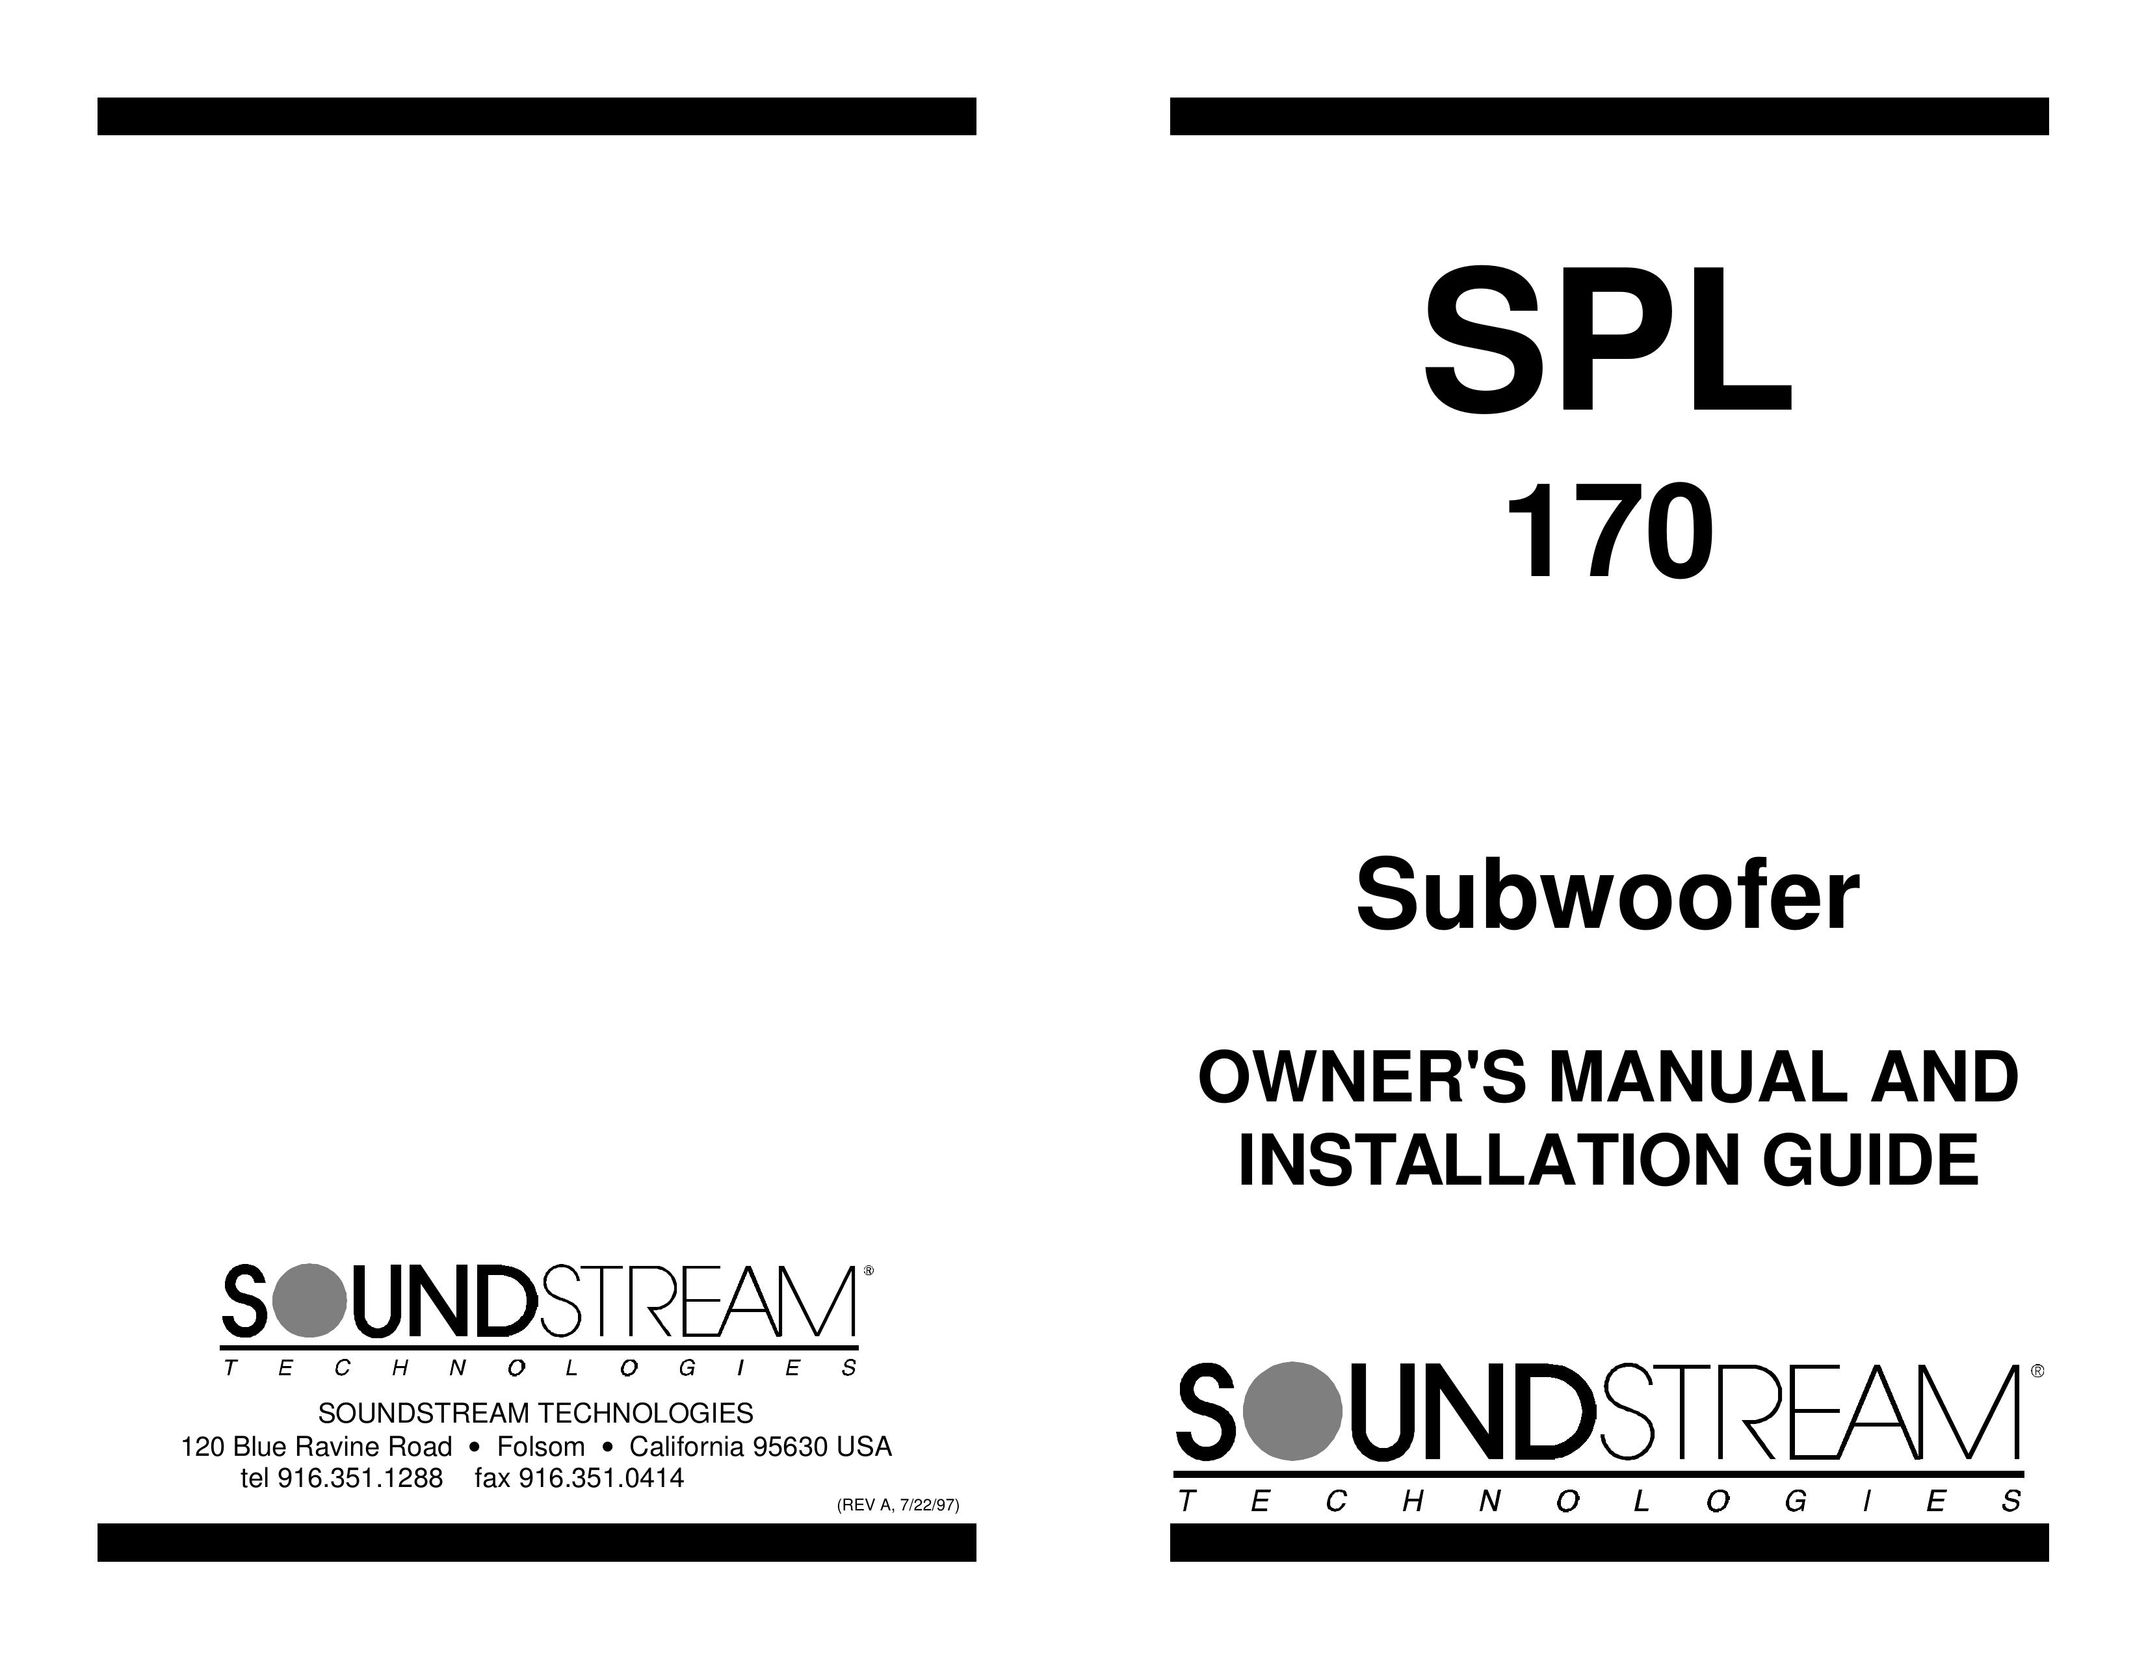 Soundstream Technologies SPL 170 Speaker User Manual